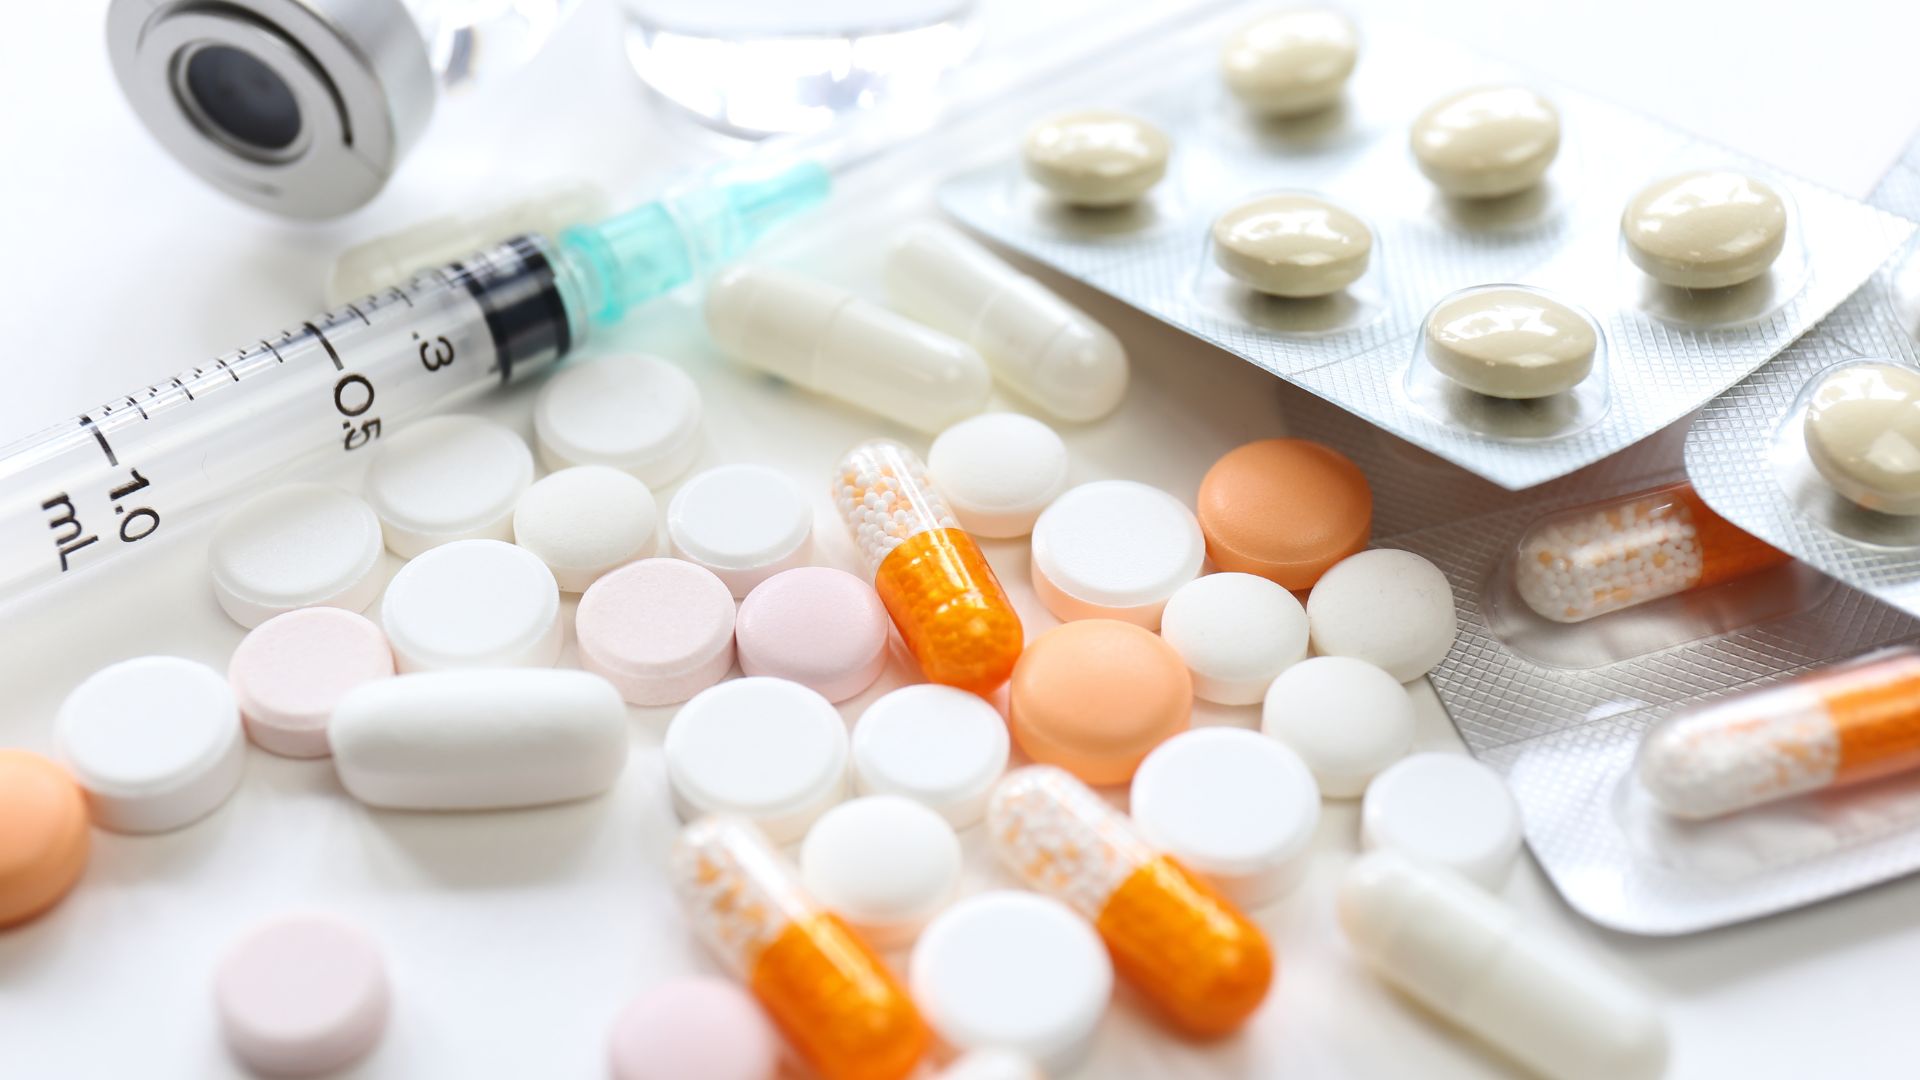 Tabletten, eine Spritze und Medikamentenfläschchen liegen verteilt auf einer Oberfläche